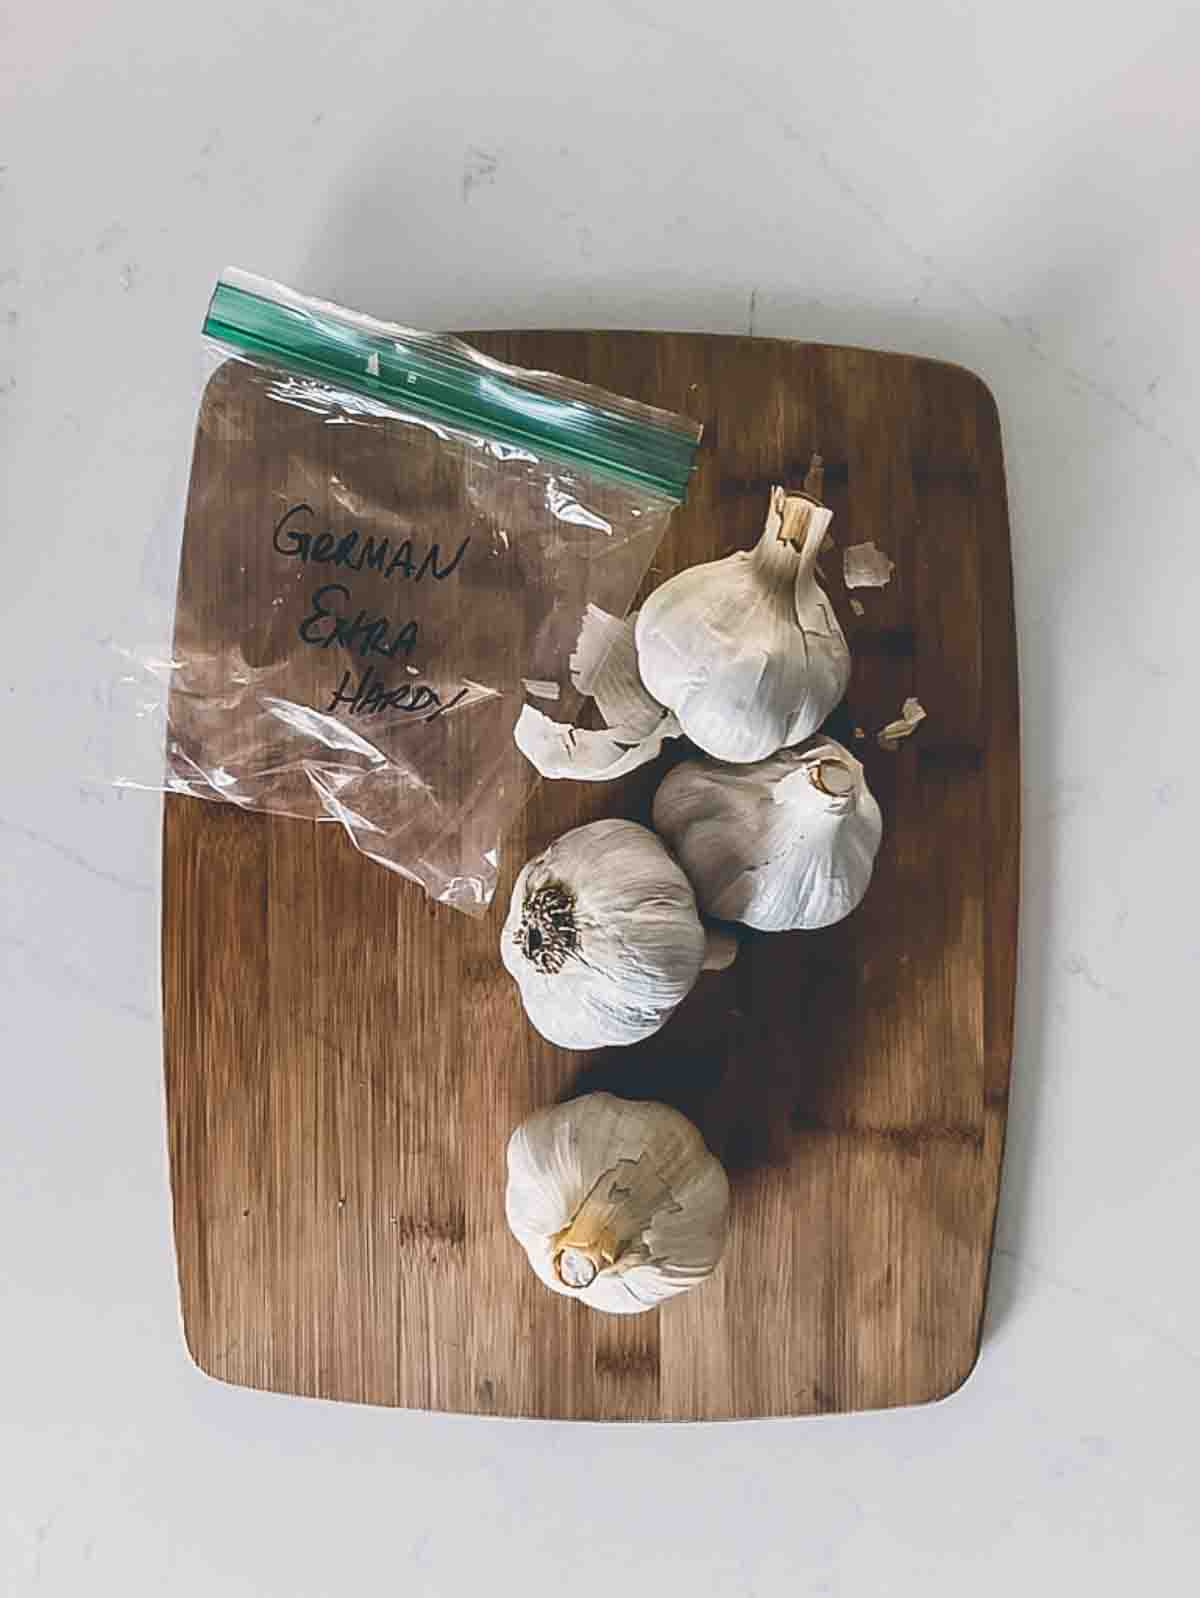 4 fresh heads of German Extra hardy garlic on a cutting board.